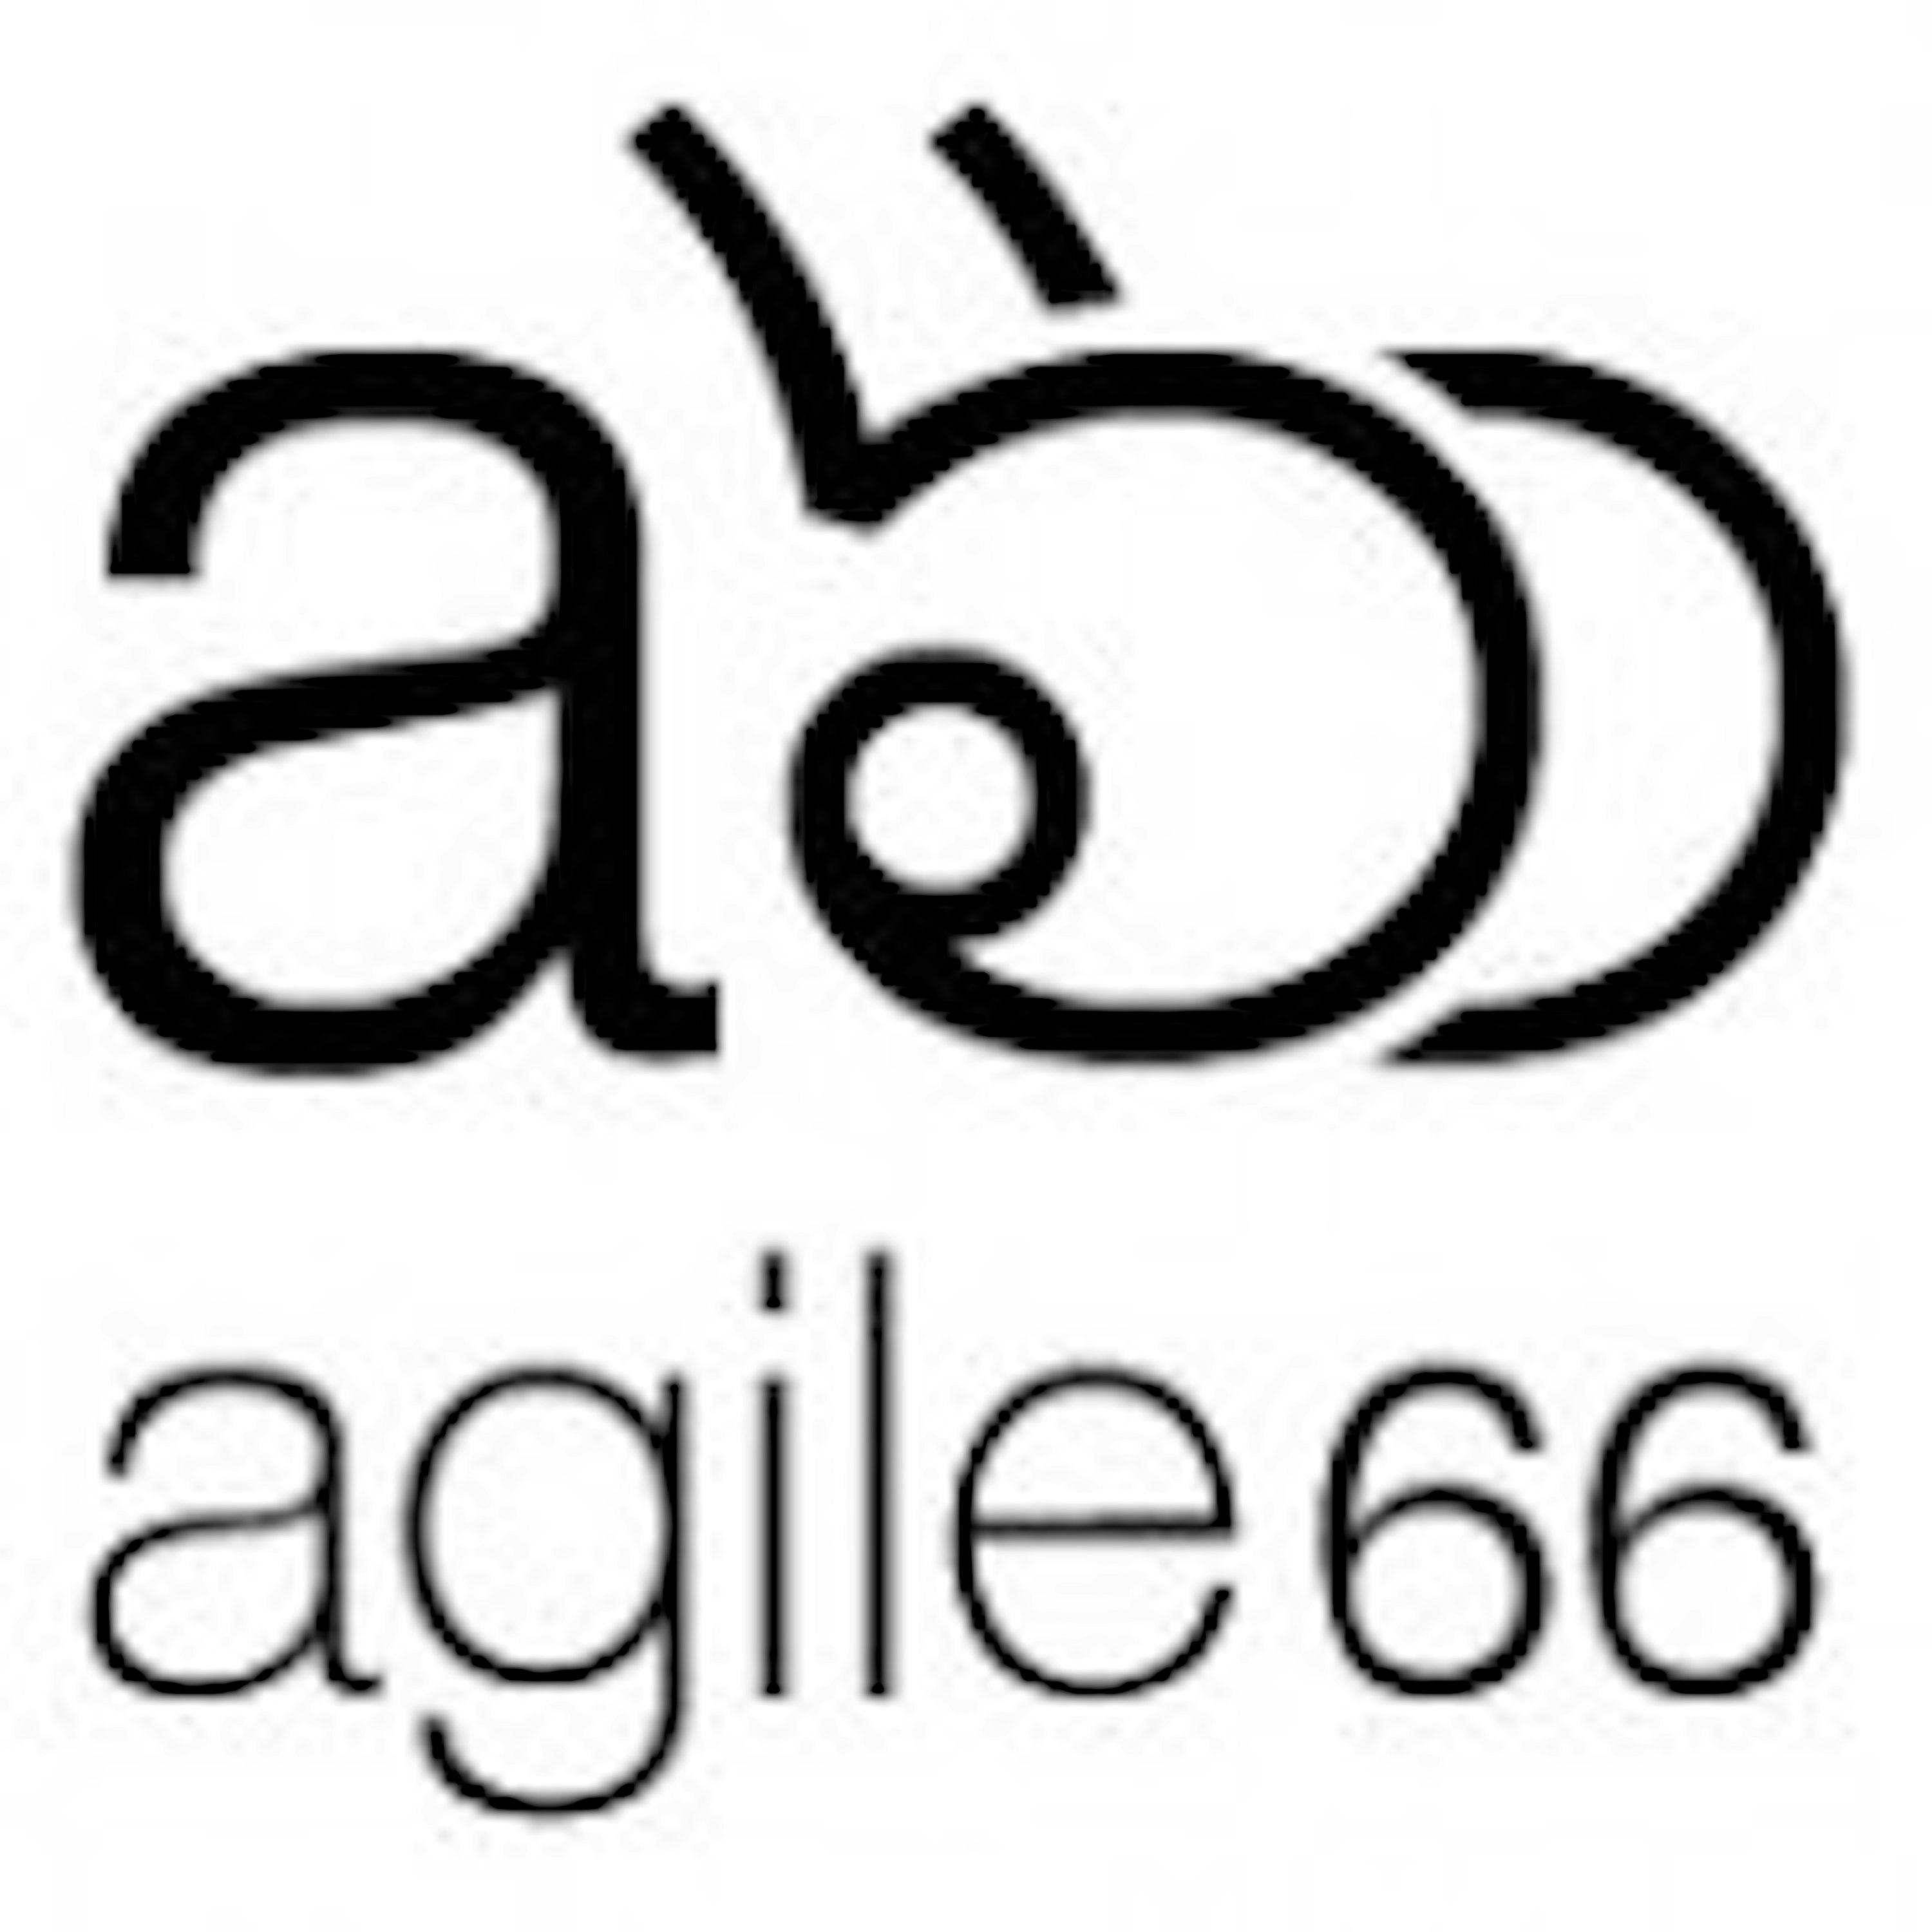 Agile66 Podcast cover logo